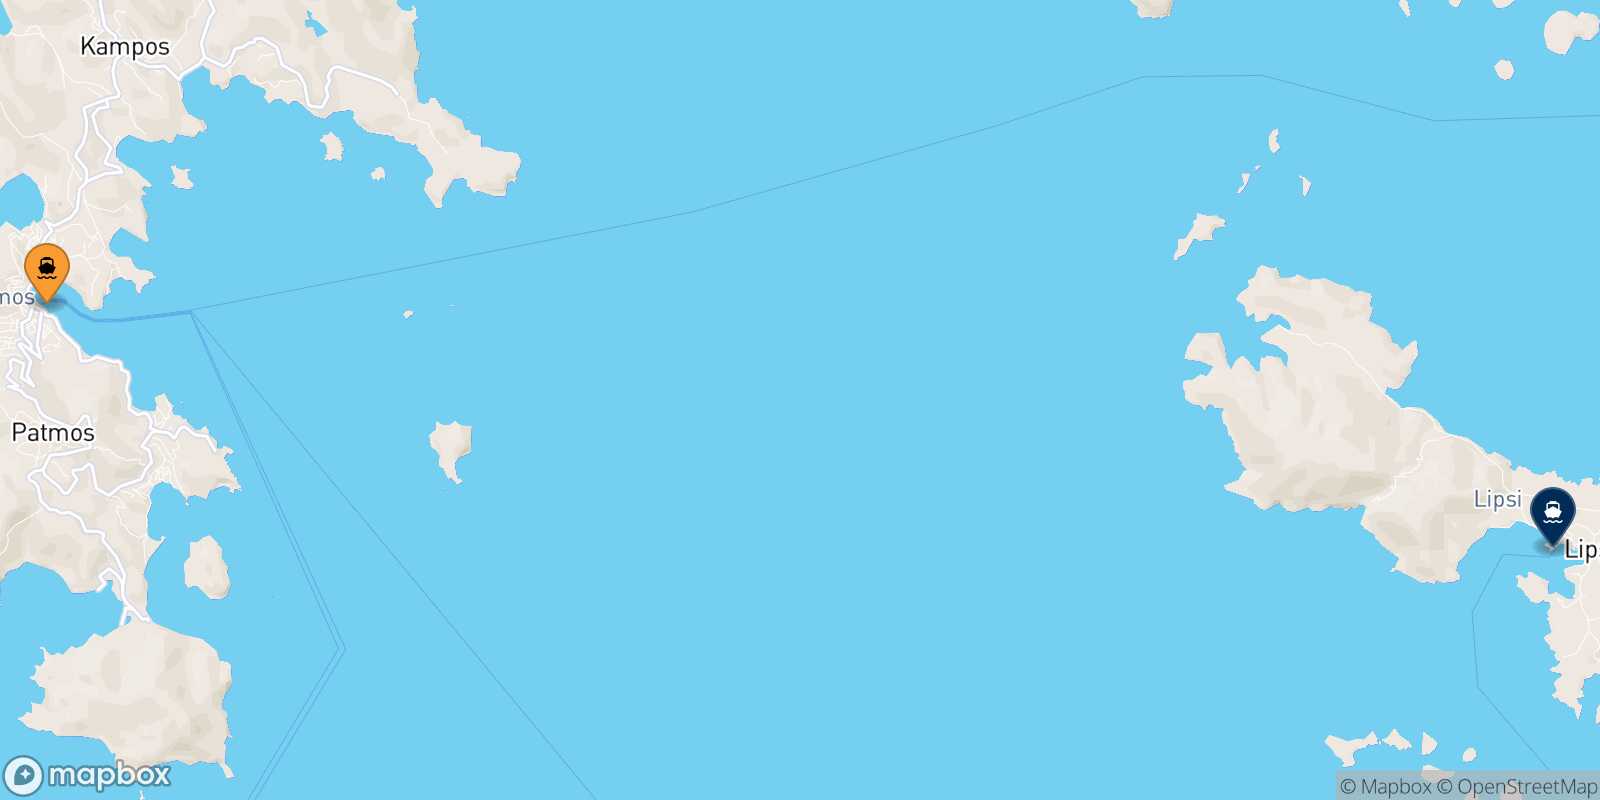 Patmos Lipsi route map